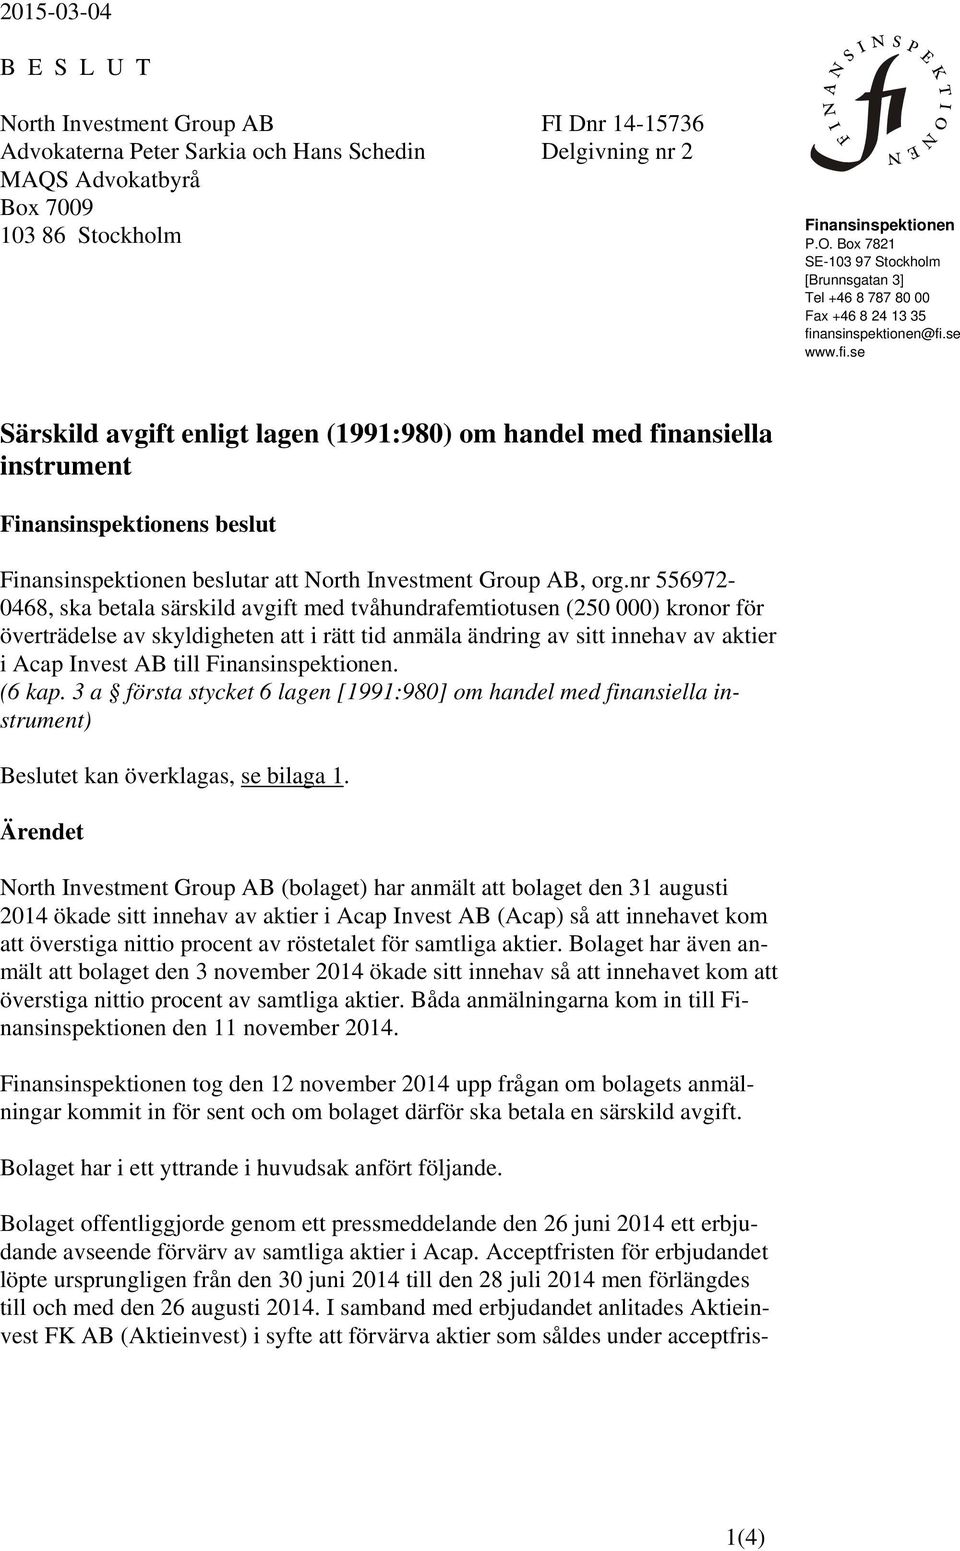 ansinspektionen@fi.se www.fi.se Särskild avgift enligt lagen (1991:980) om handel med finansiella instrument Finansinspektionens beslut Finansinspektionen beslutar att North Investment Group AB, org.